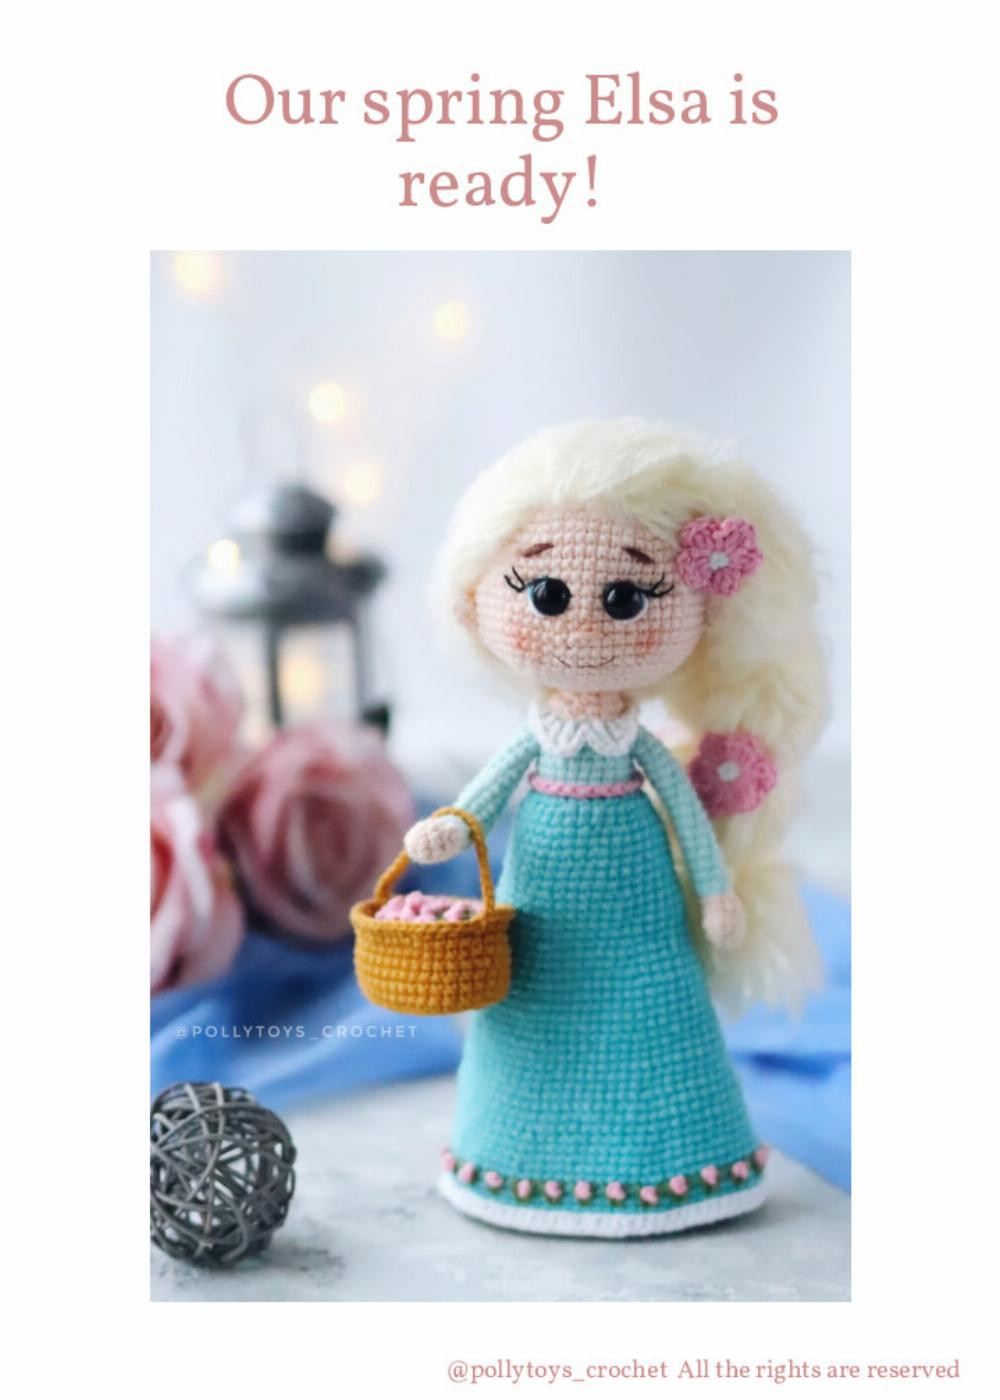 pattern crochet doll spring elsa